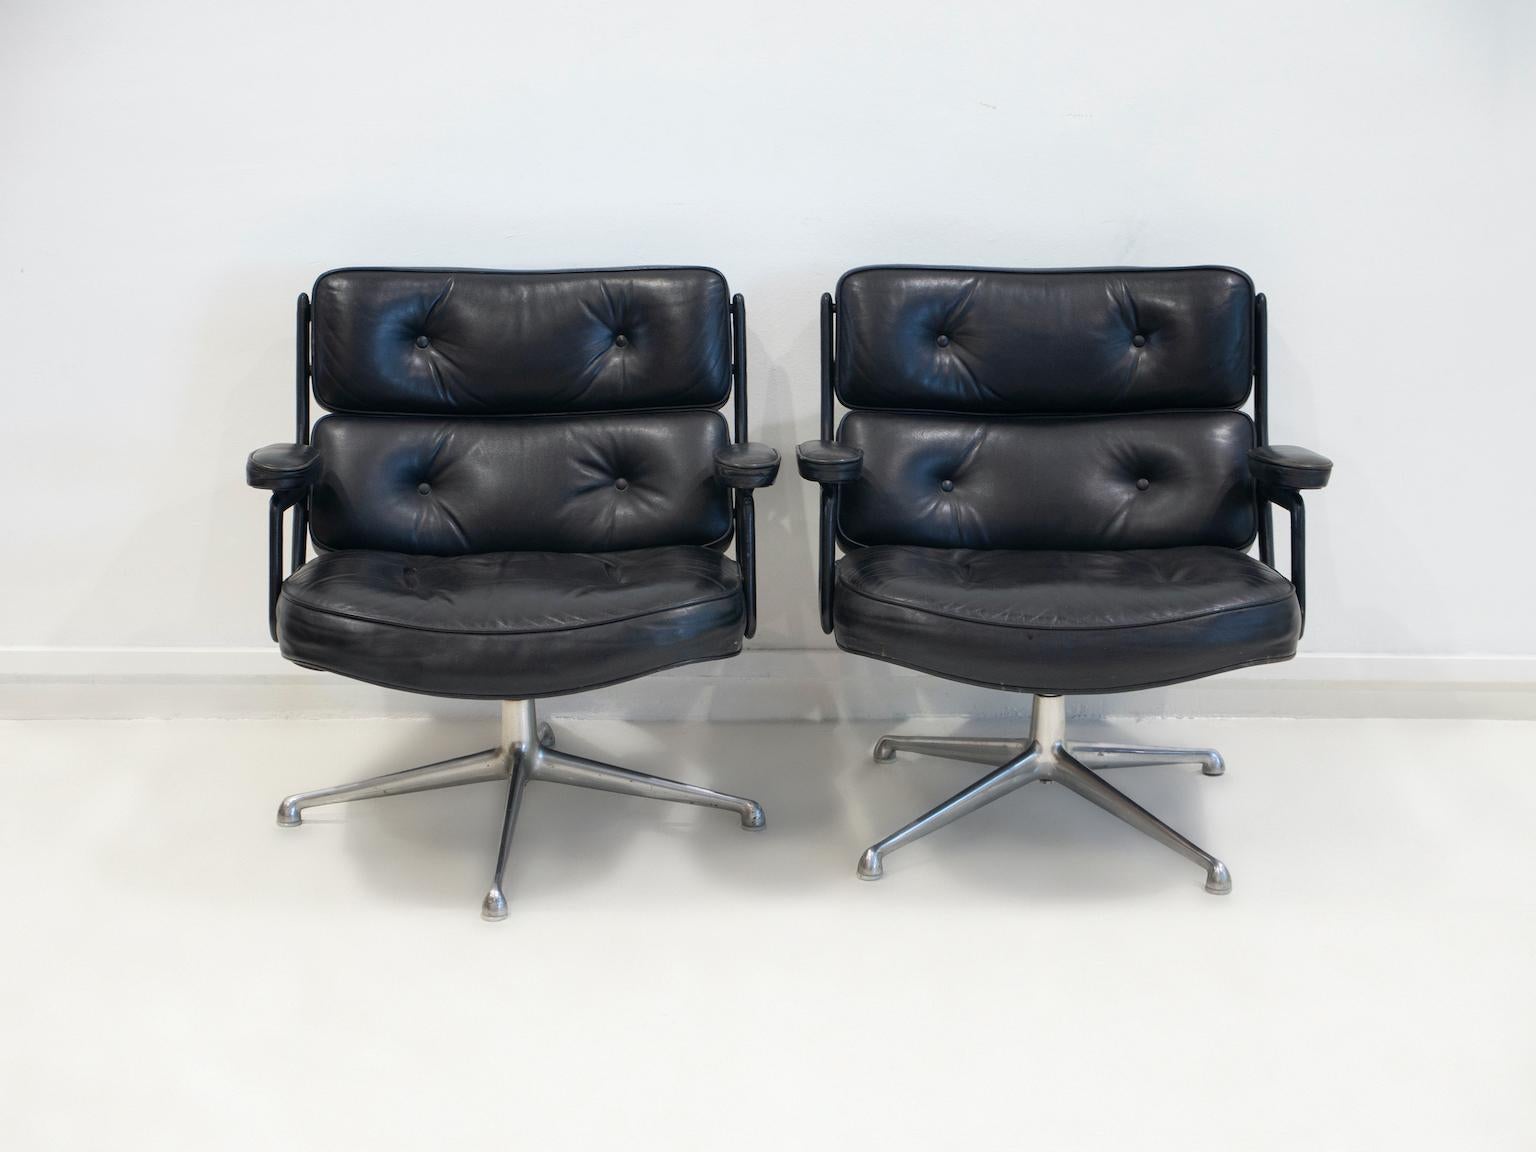 Paar schwarze ledergepolsterte Drehsessel, Modell ES 108, entworfen von Charles & Ray Eames, hergestellt von Vitra. 
Der Lobby Chair wurde 1960 für den Empfangsbereich des Time Life Gebäudes in New York entworfen. 
Gestell aus poliertem Aluminium,